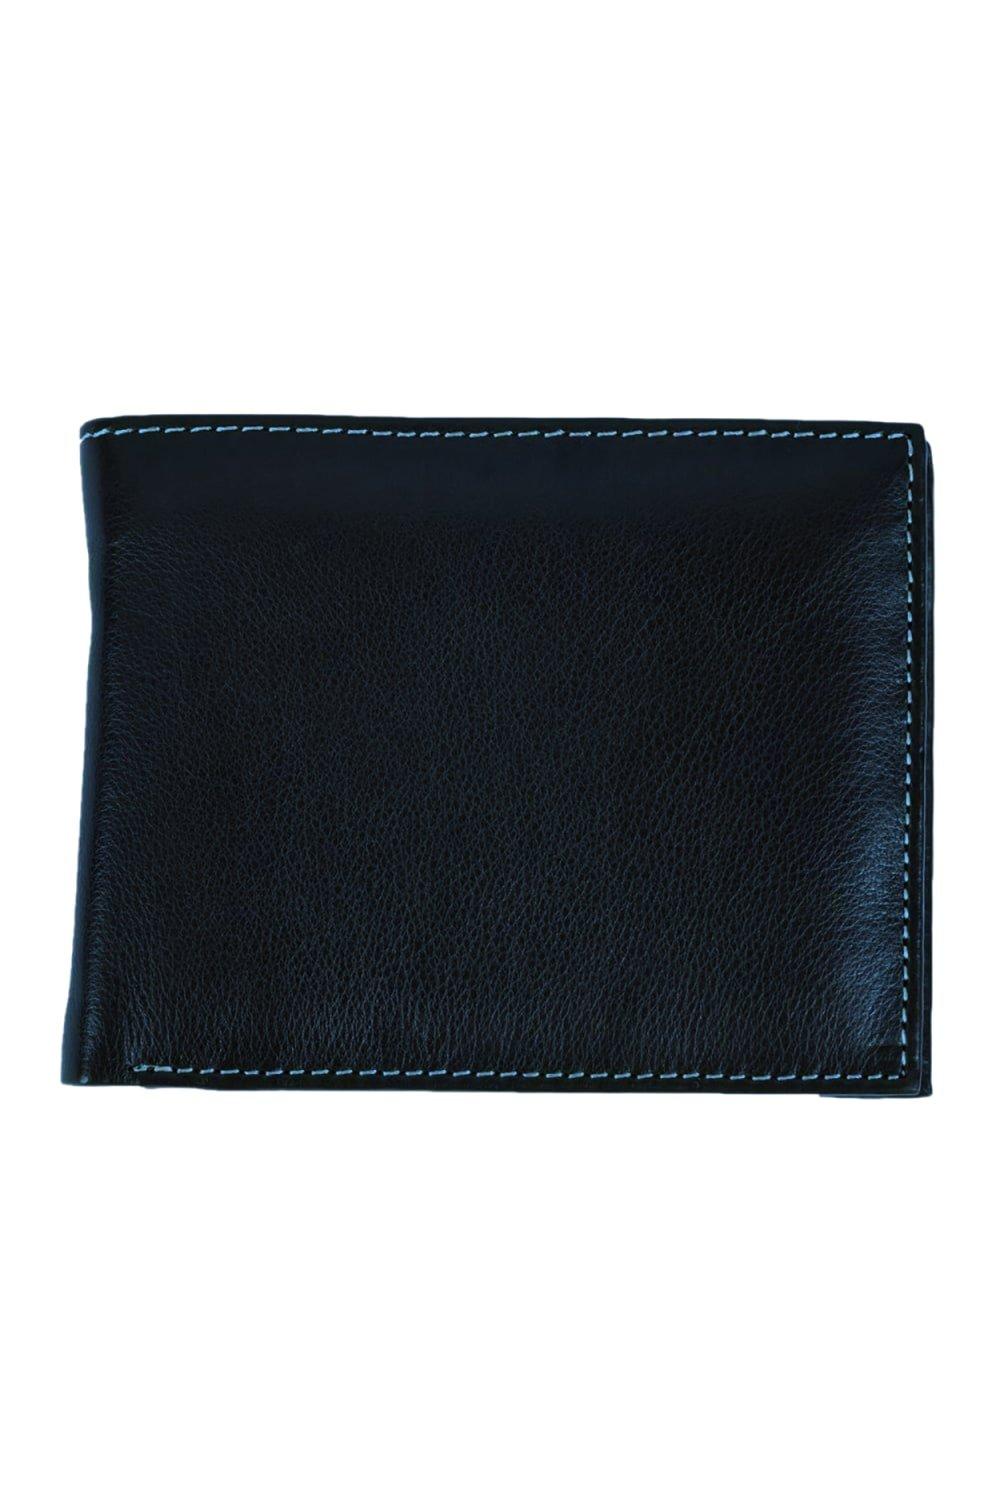 Кошелек Mark Trifold с карманом для монет Eastern Counties Leather, темно-синий женский маленький кошелек из натуральной кожи короткий кошелек тройного сложения с отделением для карт и rfid защитой кошелек для монет 2022